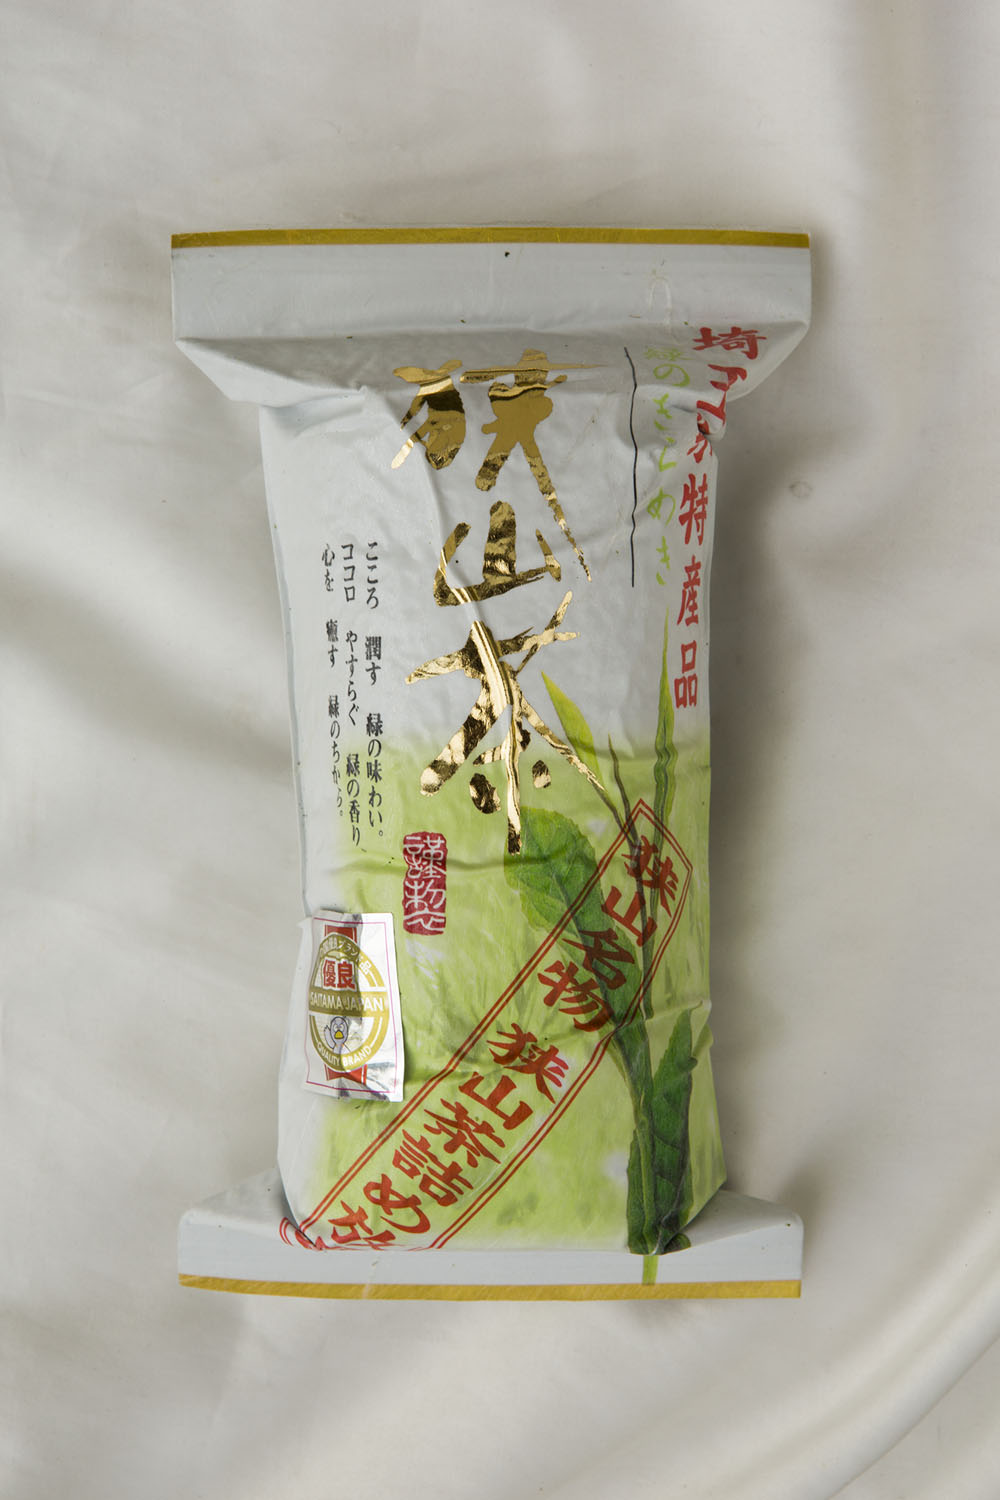 「狭山茶詰め放題」1080円は300g以上の茎茶・粉茶・煎茶をブレンドした売れ筋商品。